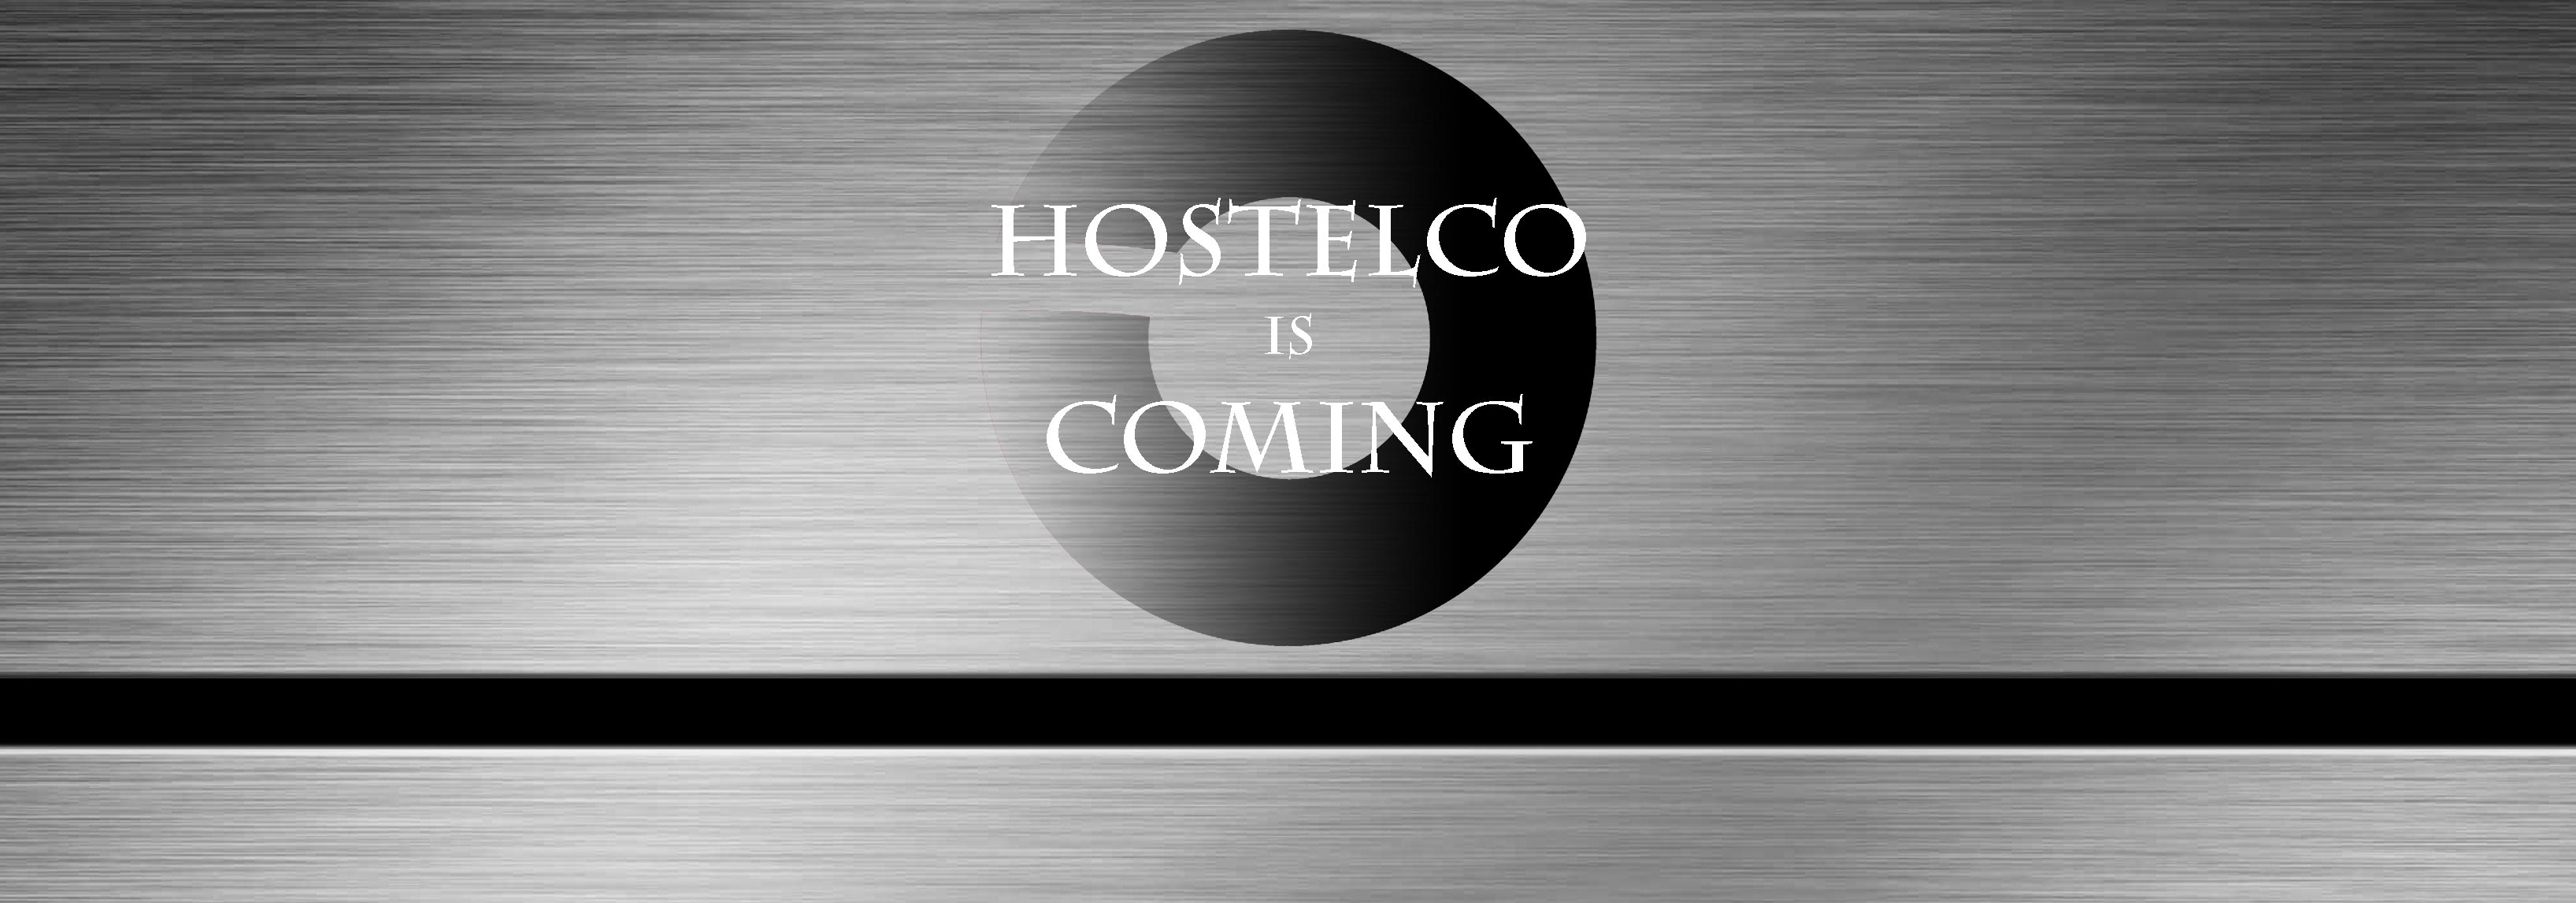 hostelco2016iscoming